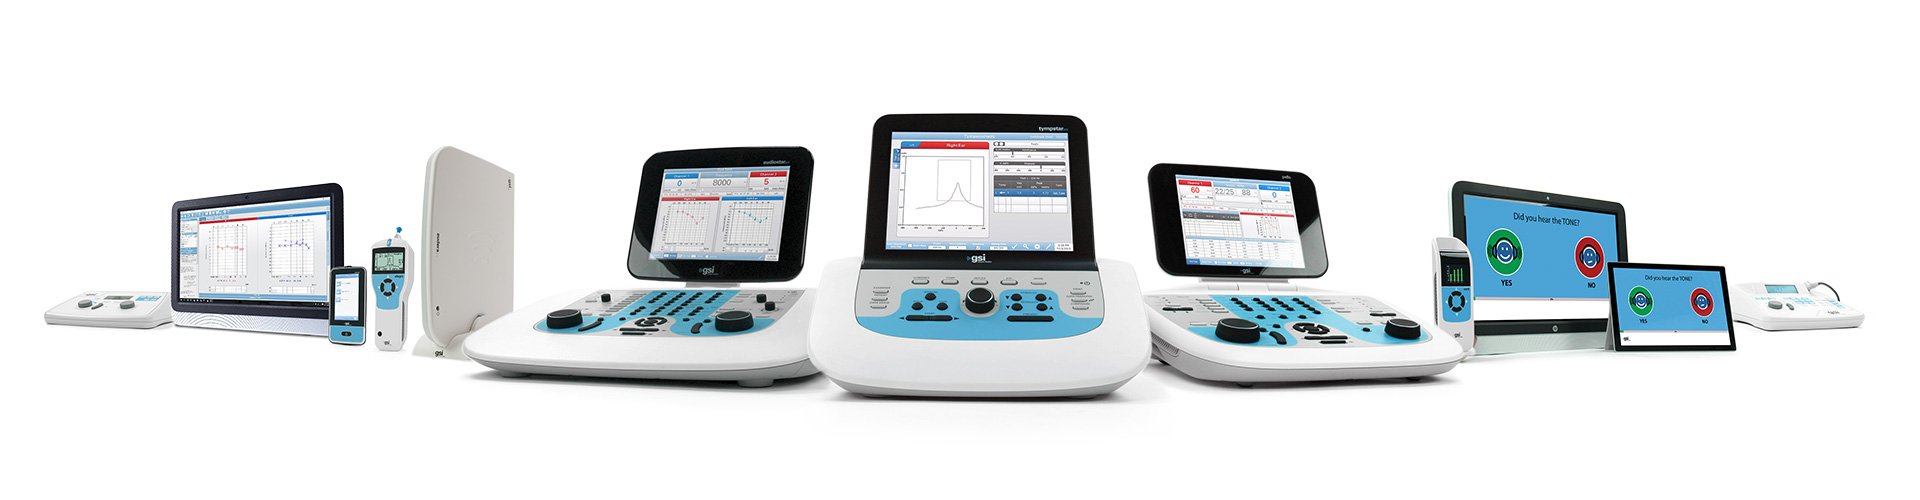 Als führender Audiometerhersteller bieten wir eine breite Auswahl an medizinischen Geräten